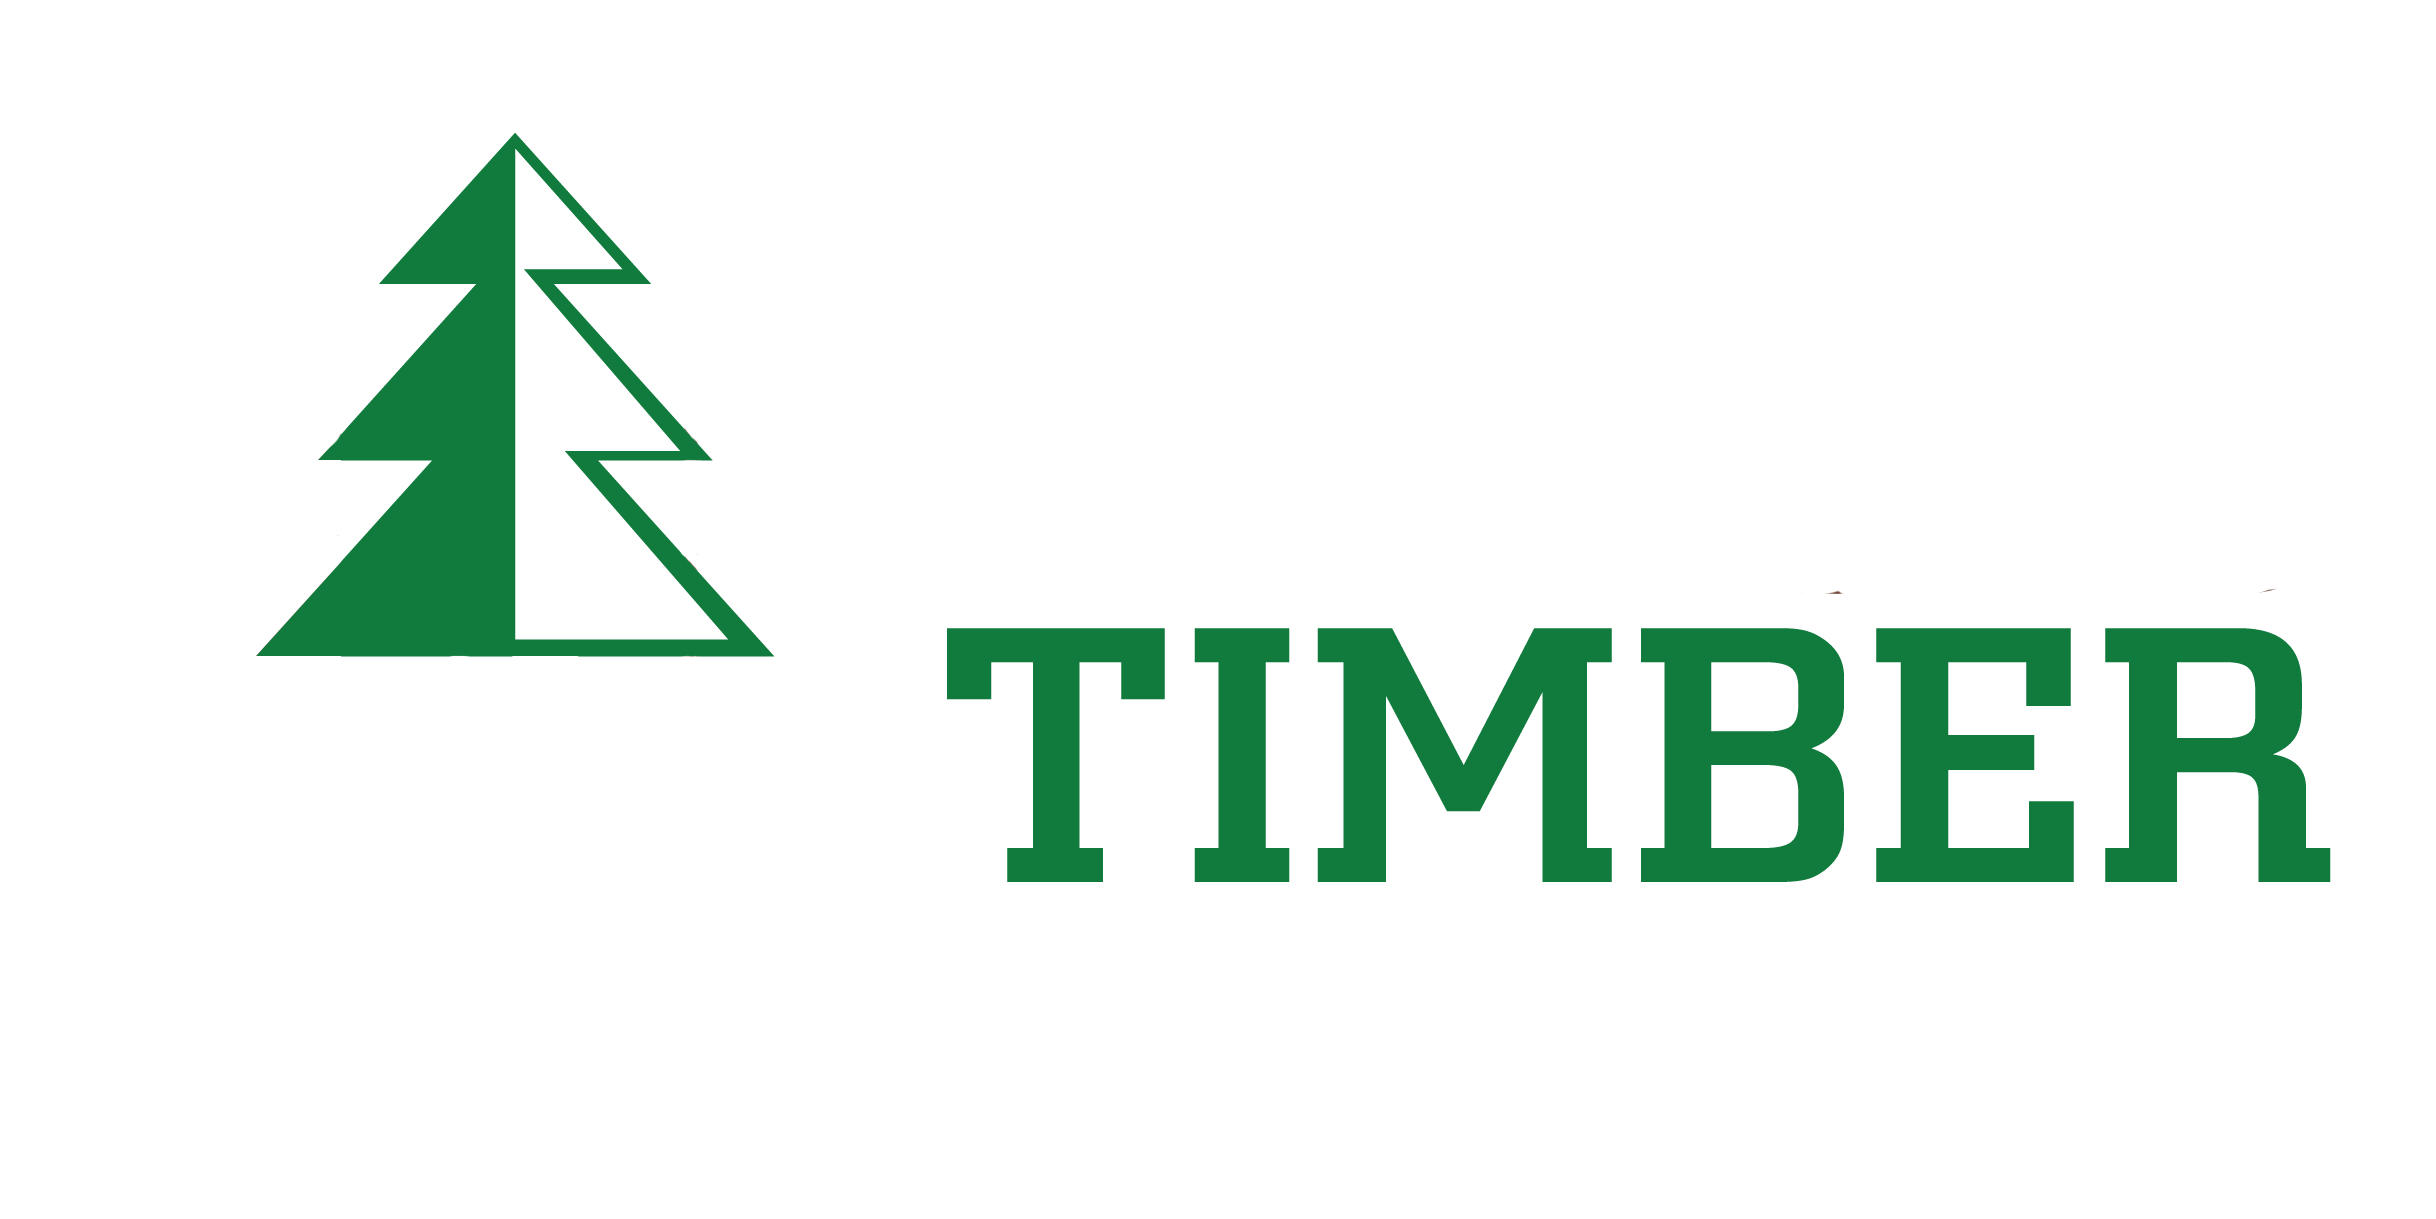 Ward Timber